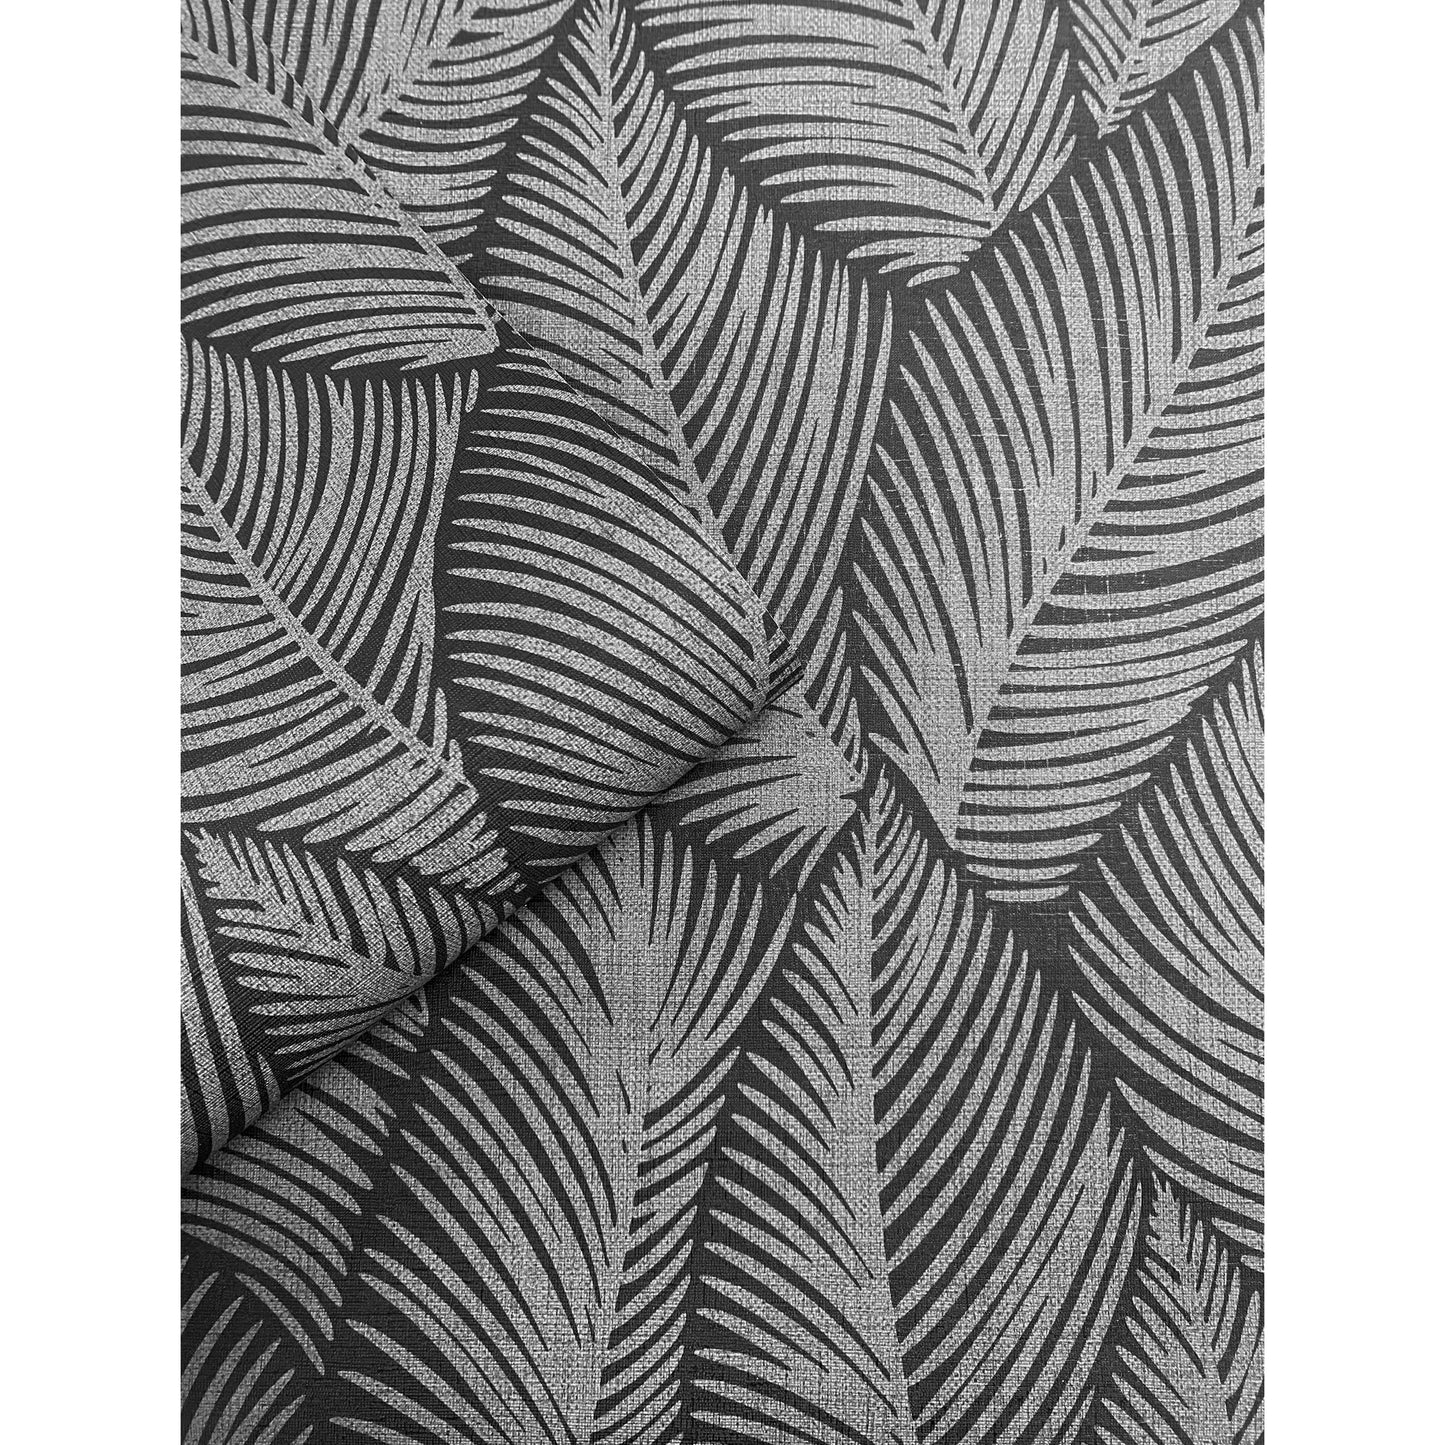 Muriva Denver Leaf Charcoal Wallpaper (196314)